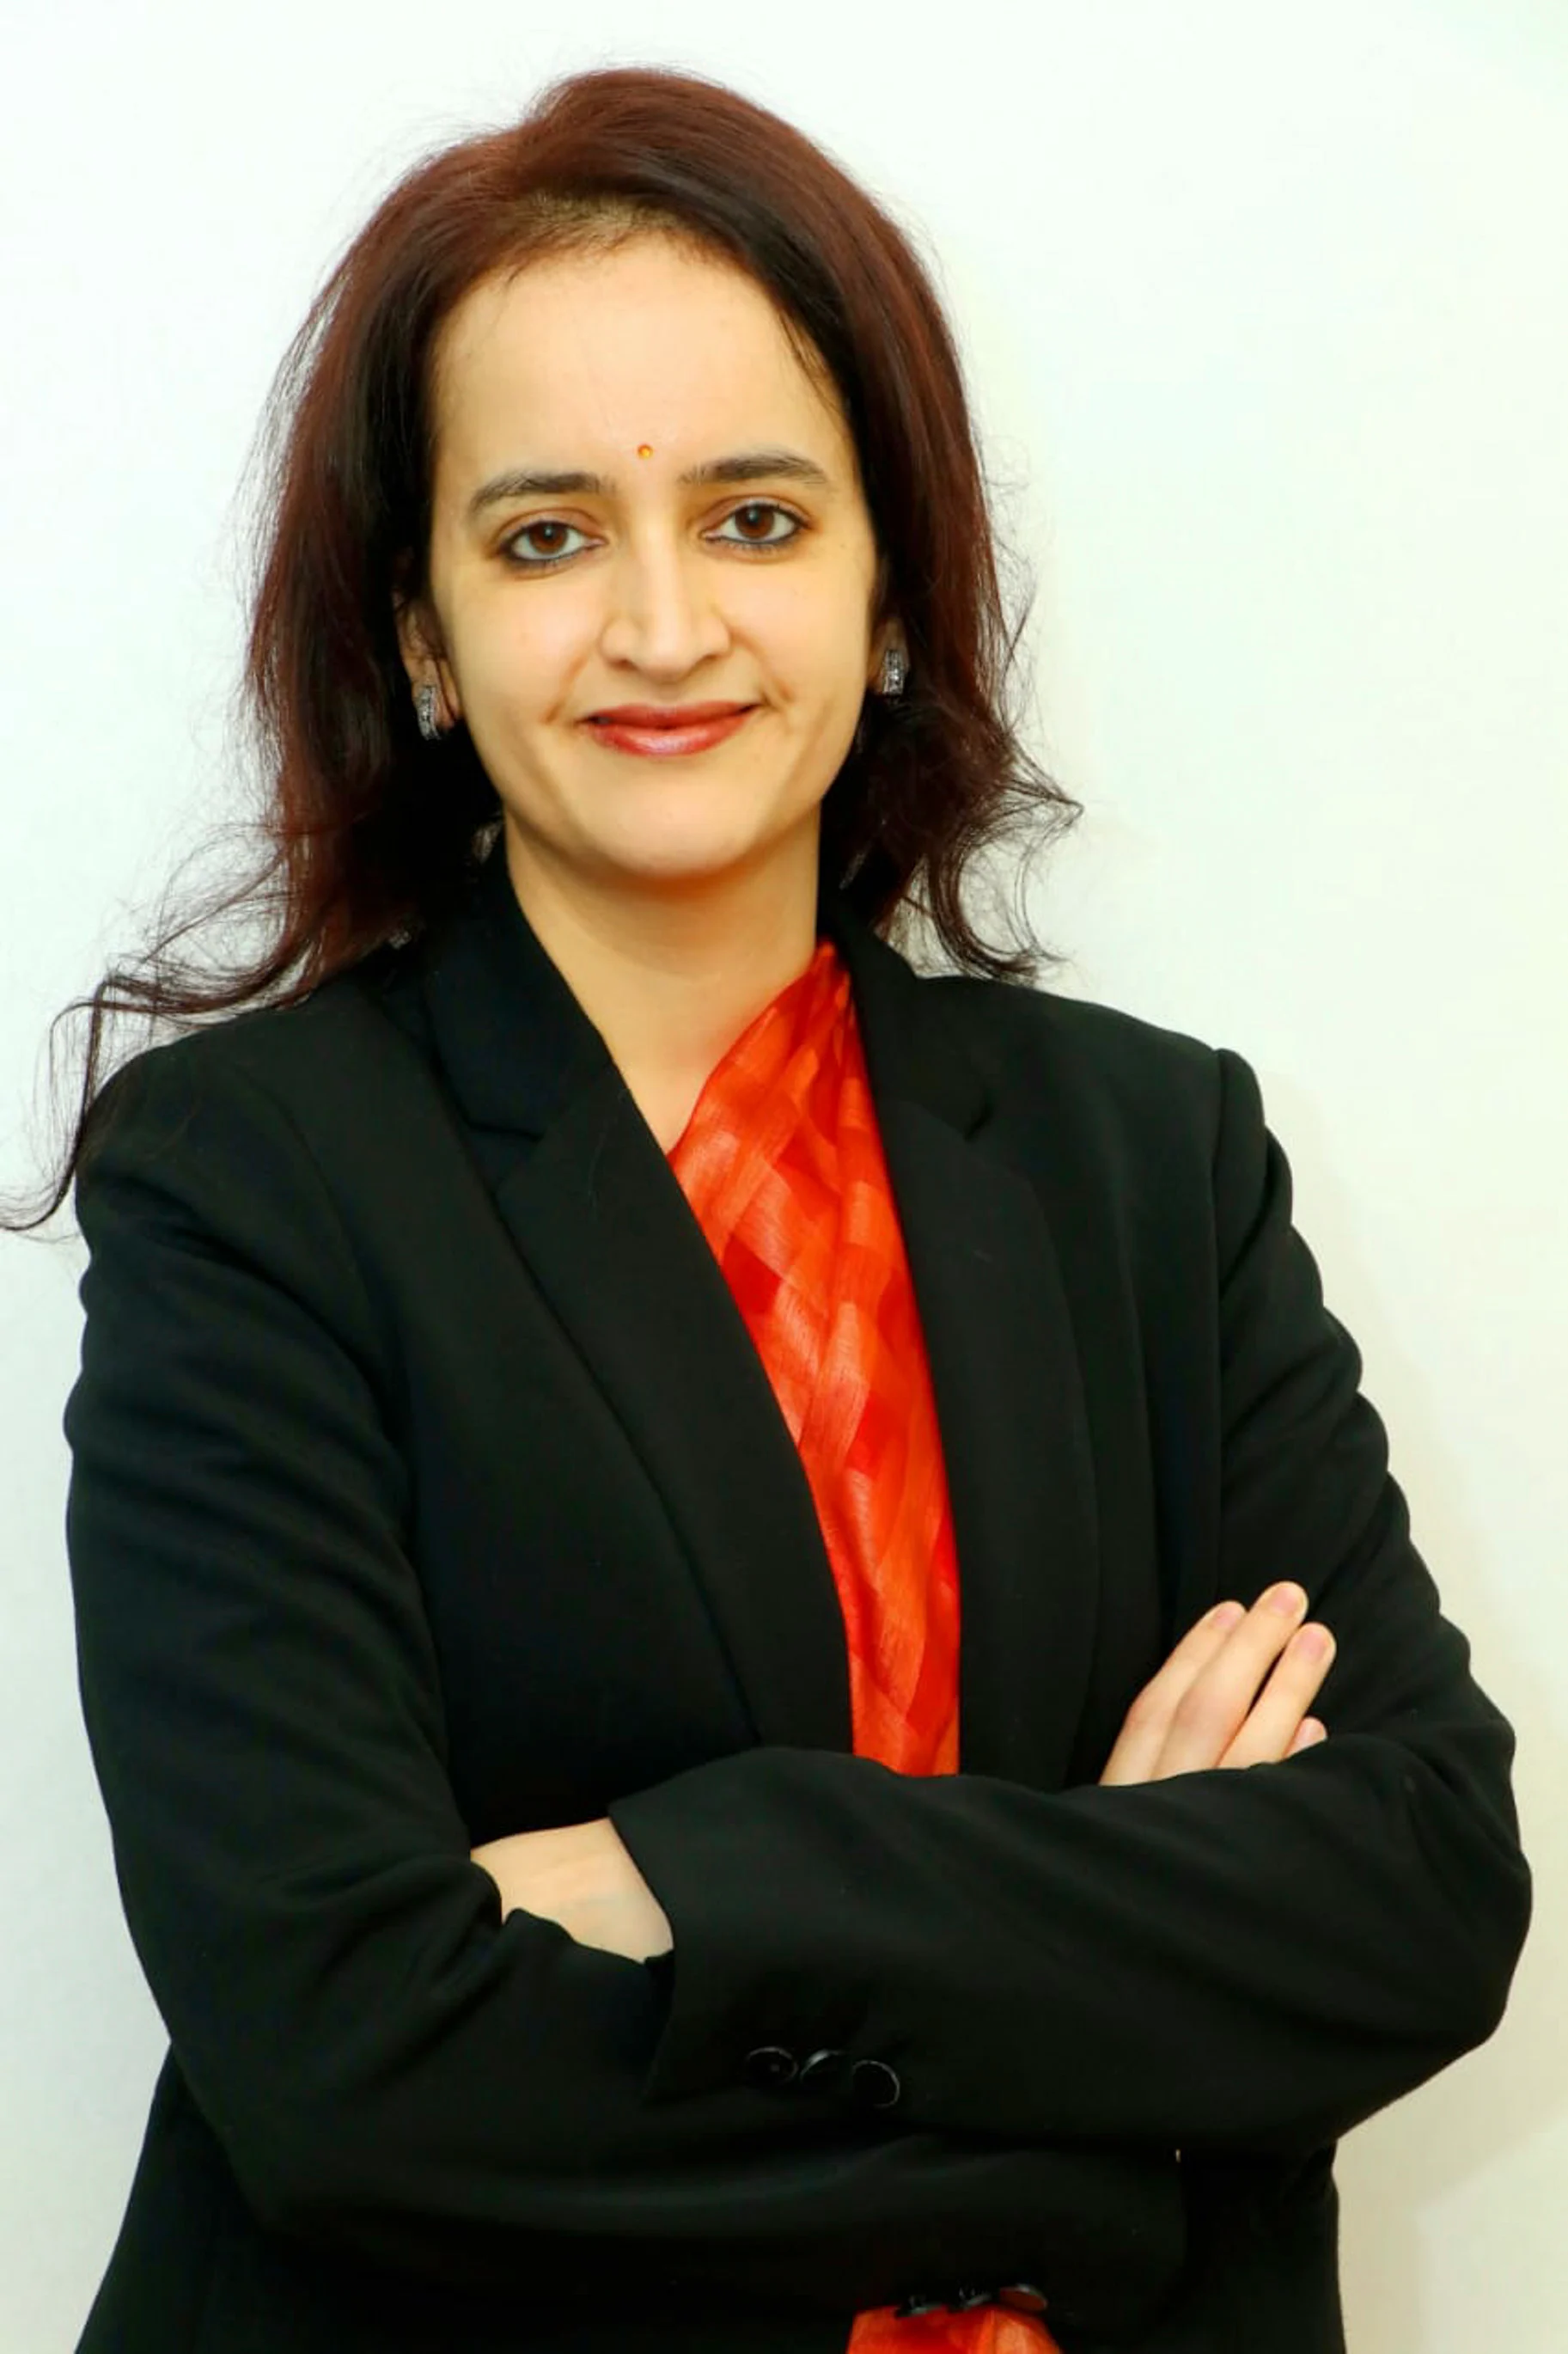 Tiến sĩ Nivedita Pandey, bác sĩ tiêu hóa cấp cao tại Bệnh viện Max Super Specialty ở Delhi, Ấn Độ.